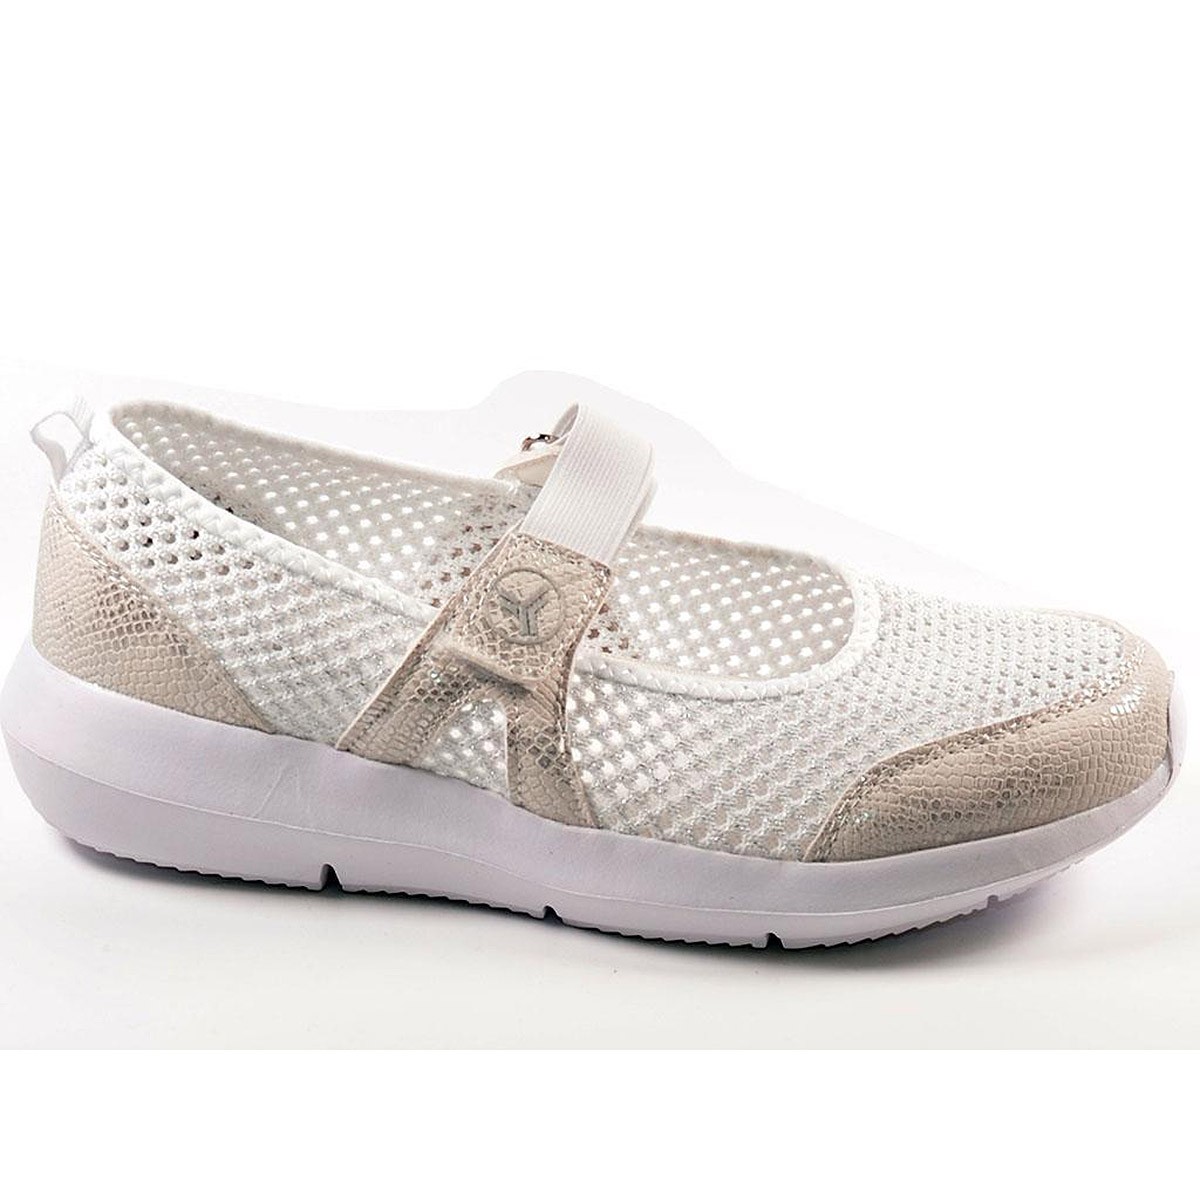 Kendall Yumas Zapato Zapato nylon perforado, cierre velcro ajustable. Plantilla confort látex y piso eva termo conformada. Liger